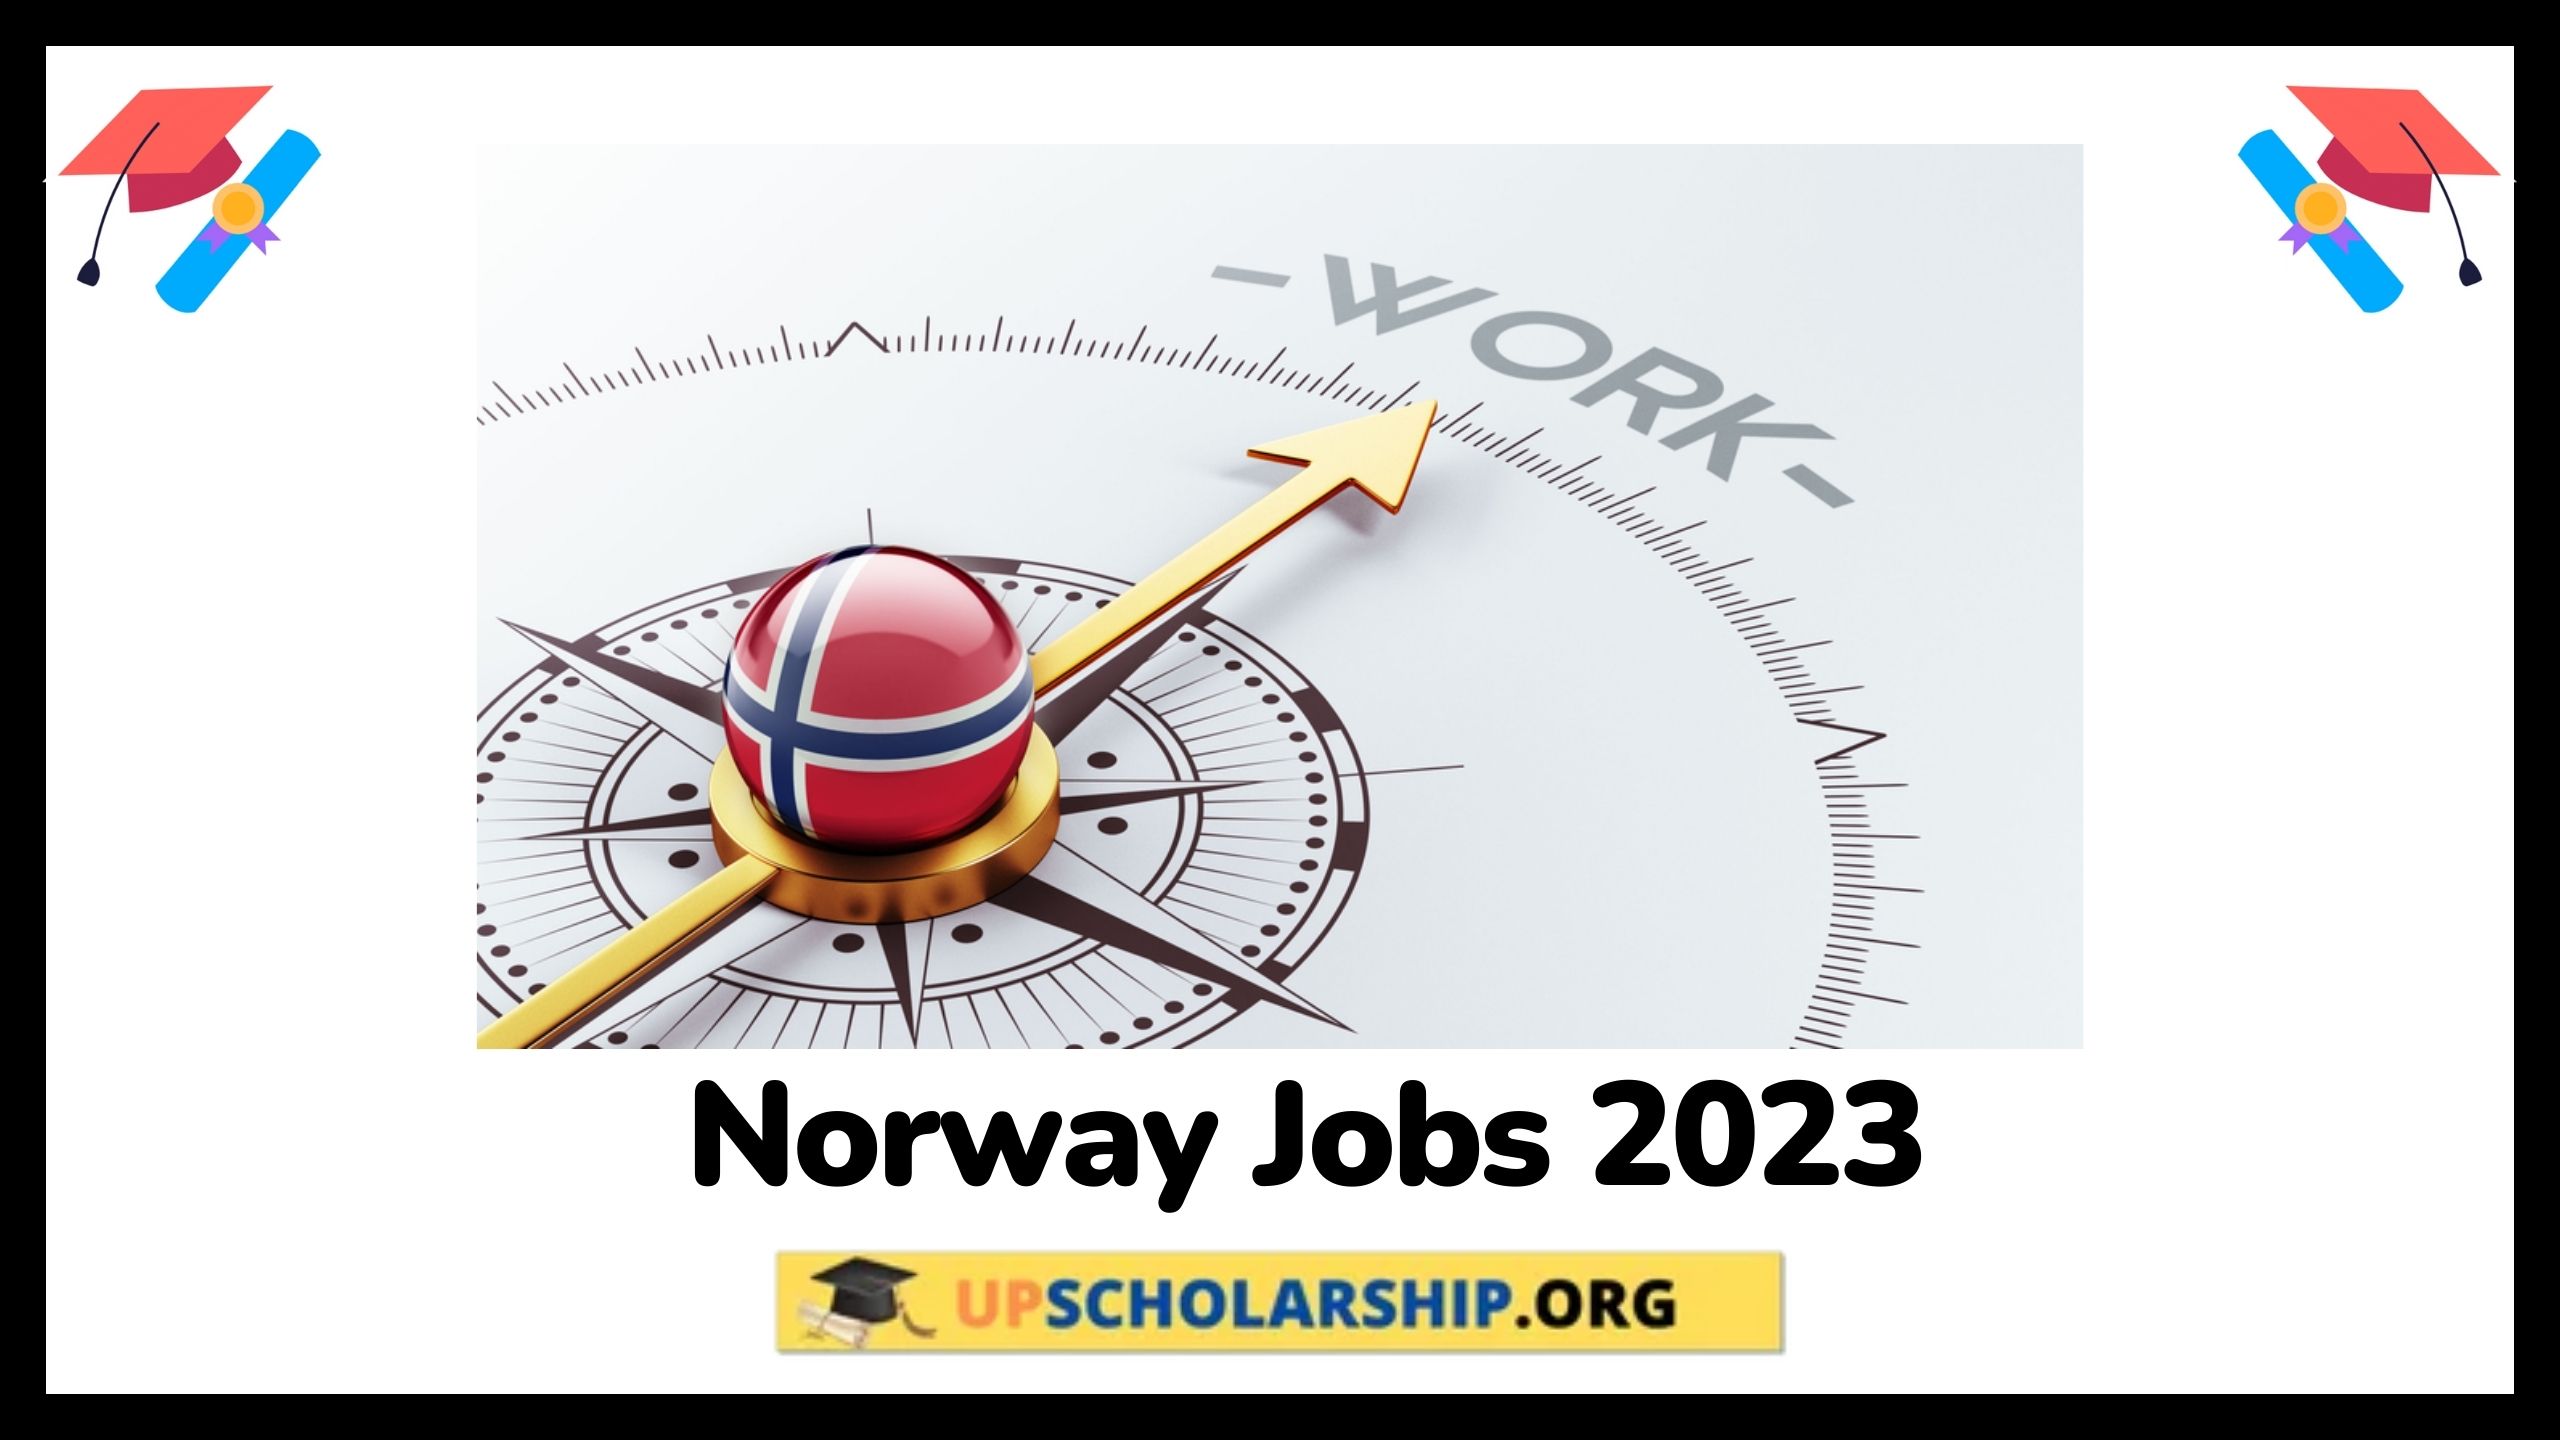 Norway Jobs 2023